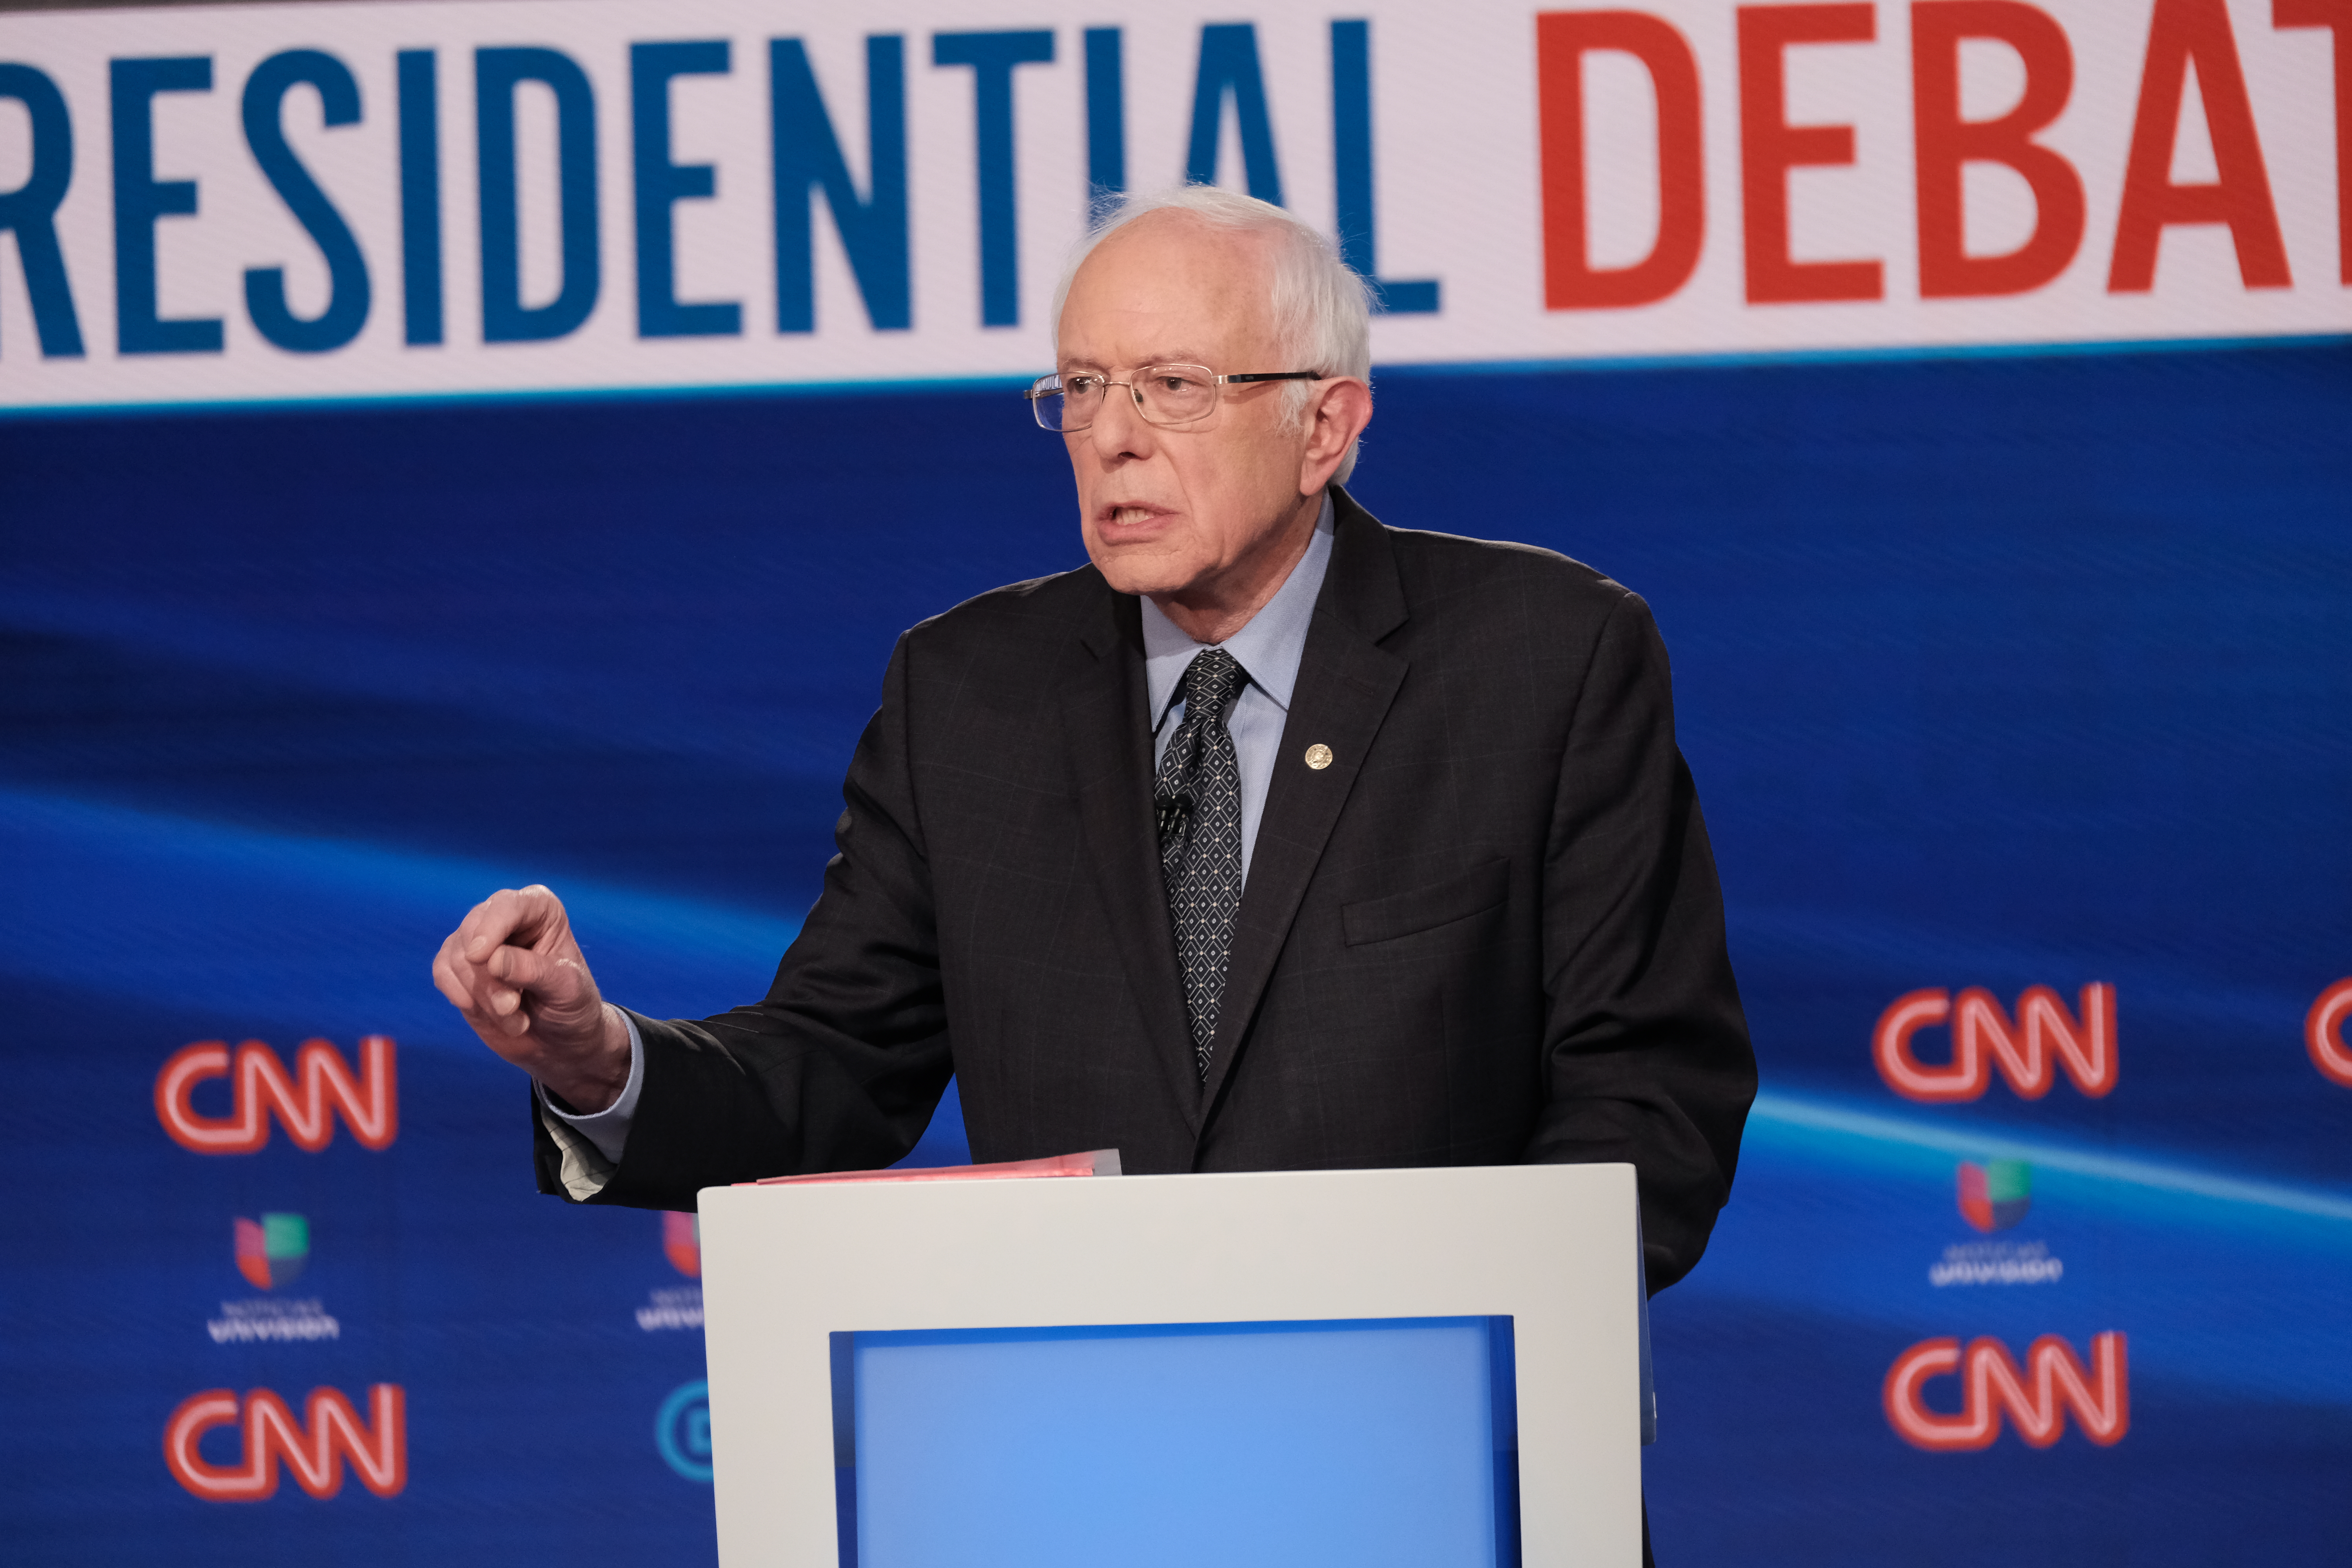 El senador del estado de Vermont Bernie Sanders participa en el debate demócrata en Washington, D.C. el domingo 15 de marzo. Foto: CNN